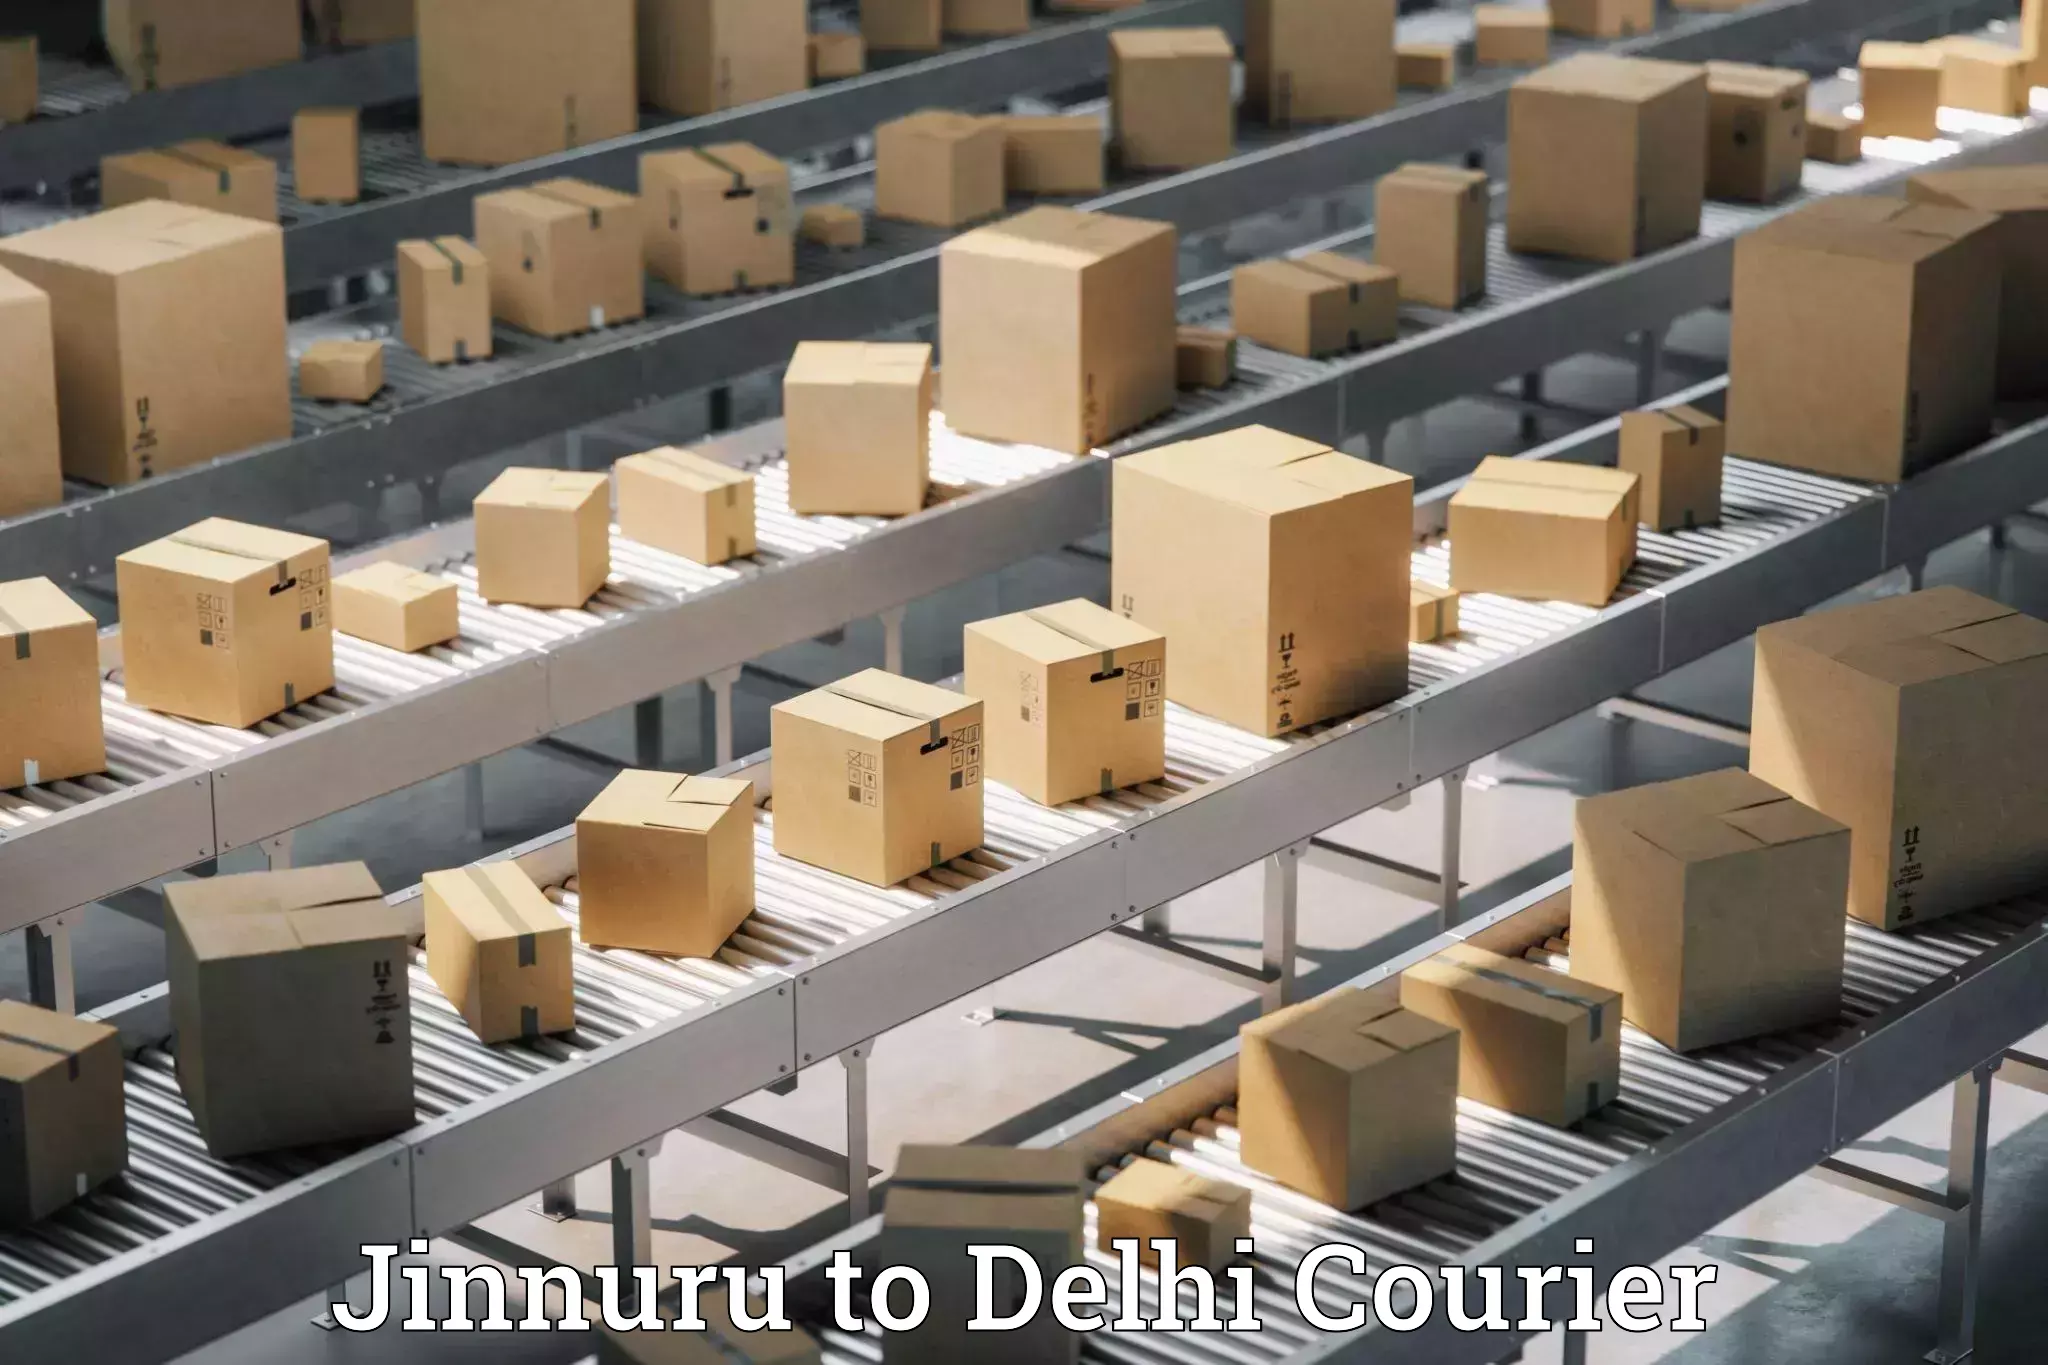 Courier services Jinnuru to Jamia Millia Islamia New Delhi